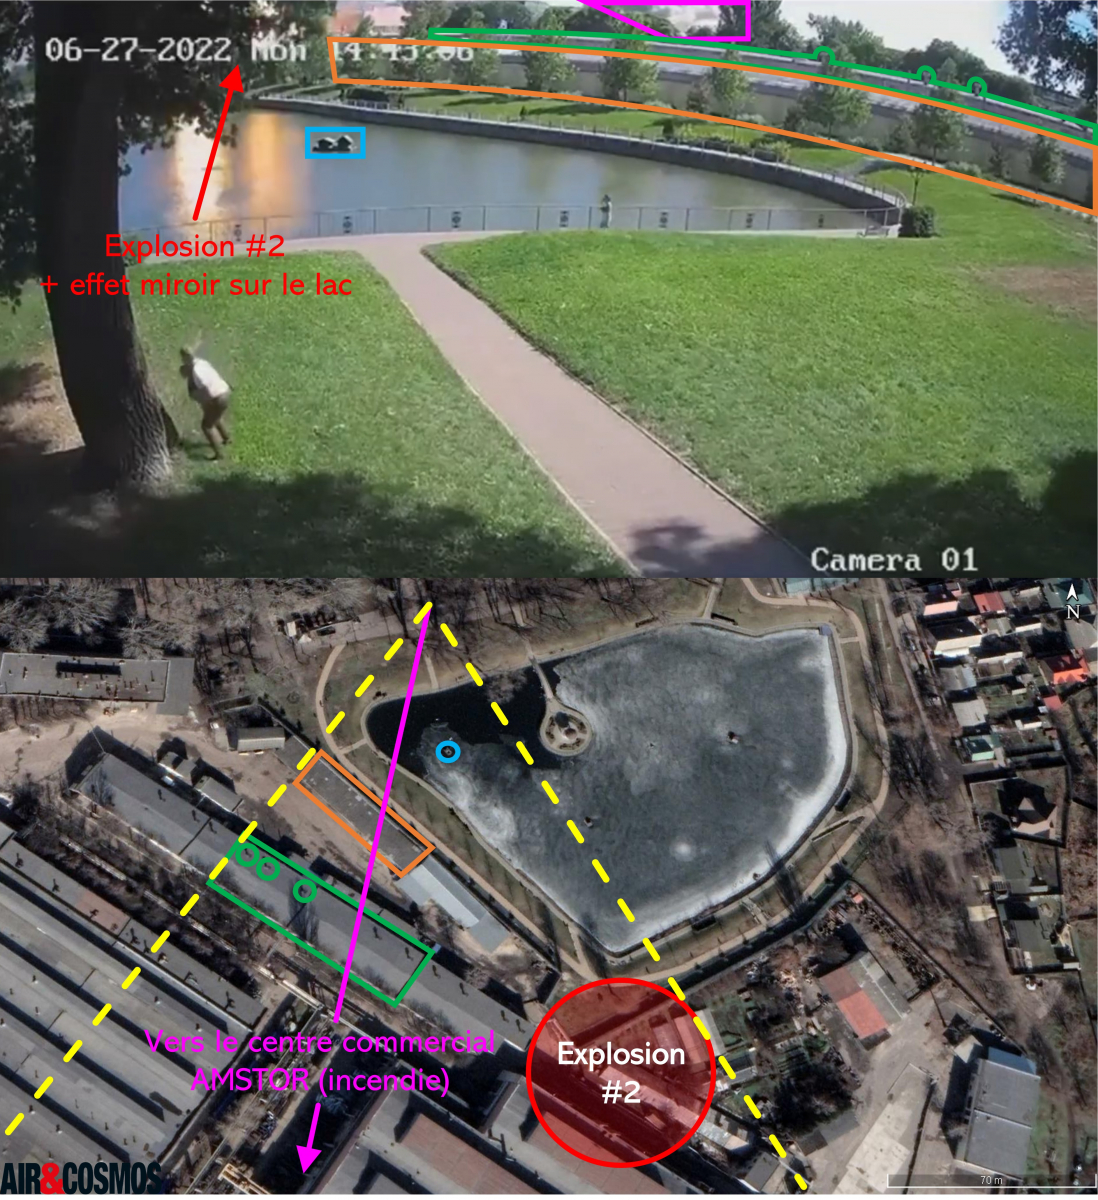 [Image 2] Capture d'écran provenant d'une caméra de surveillance située dans le parc au Nord du centre commercial et de l'usine Kredmash.